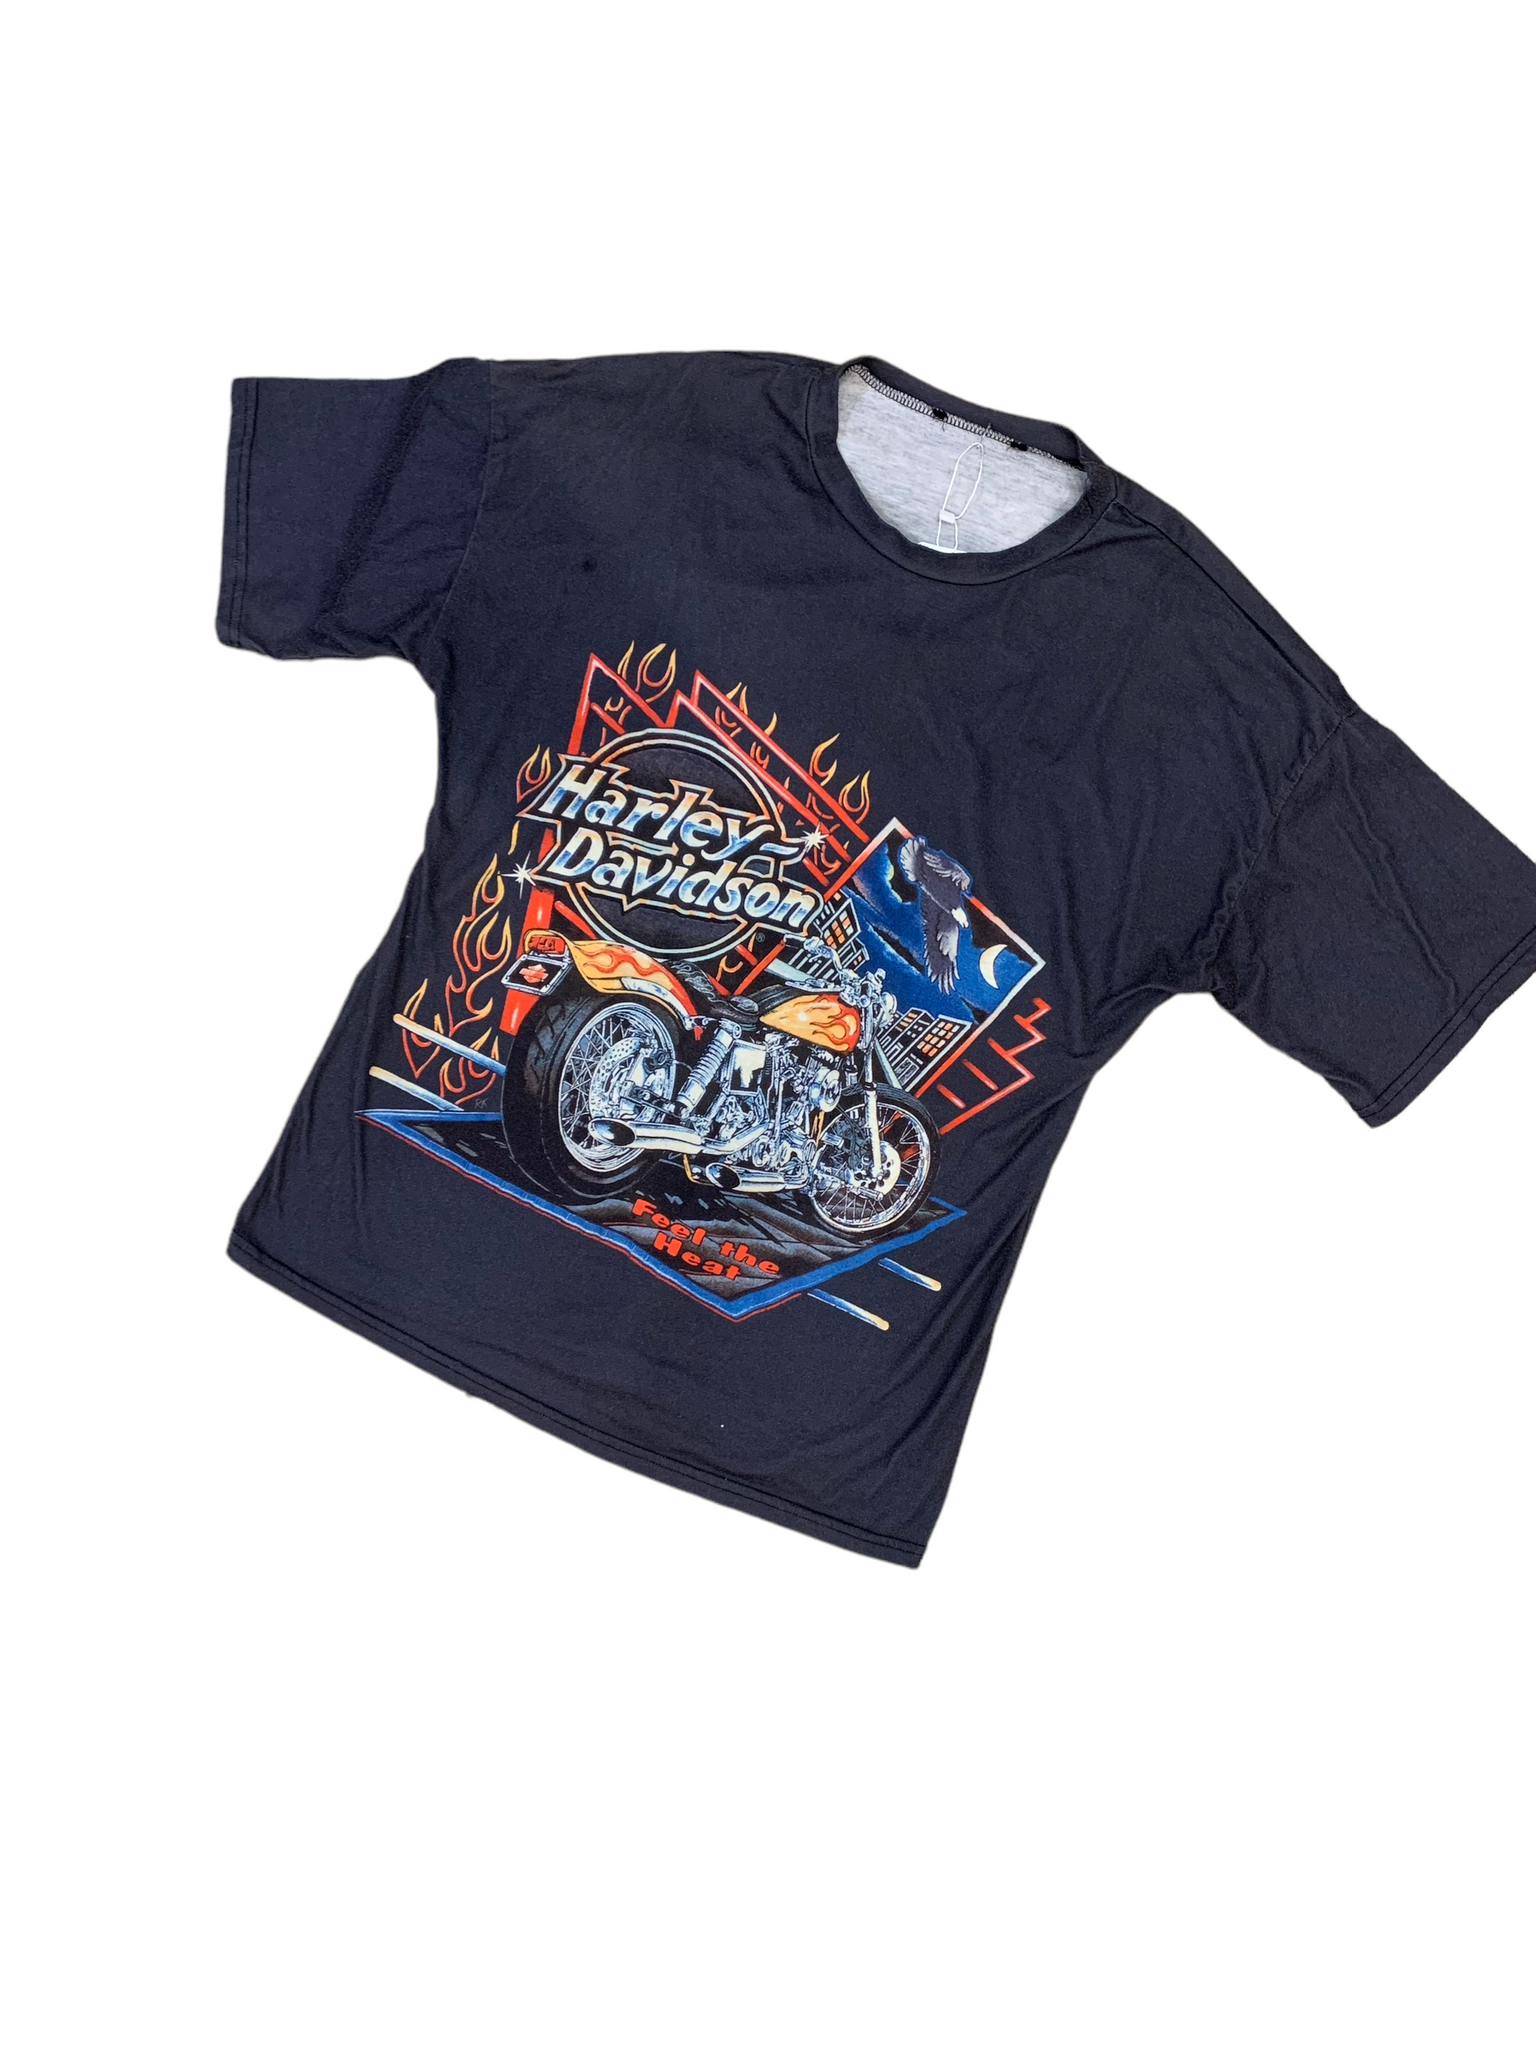 Vintage Harley T-Shirt